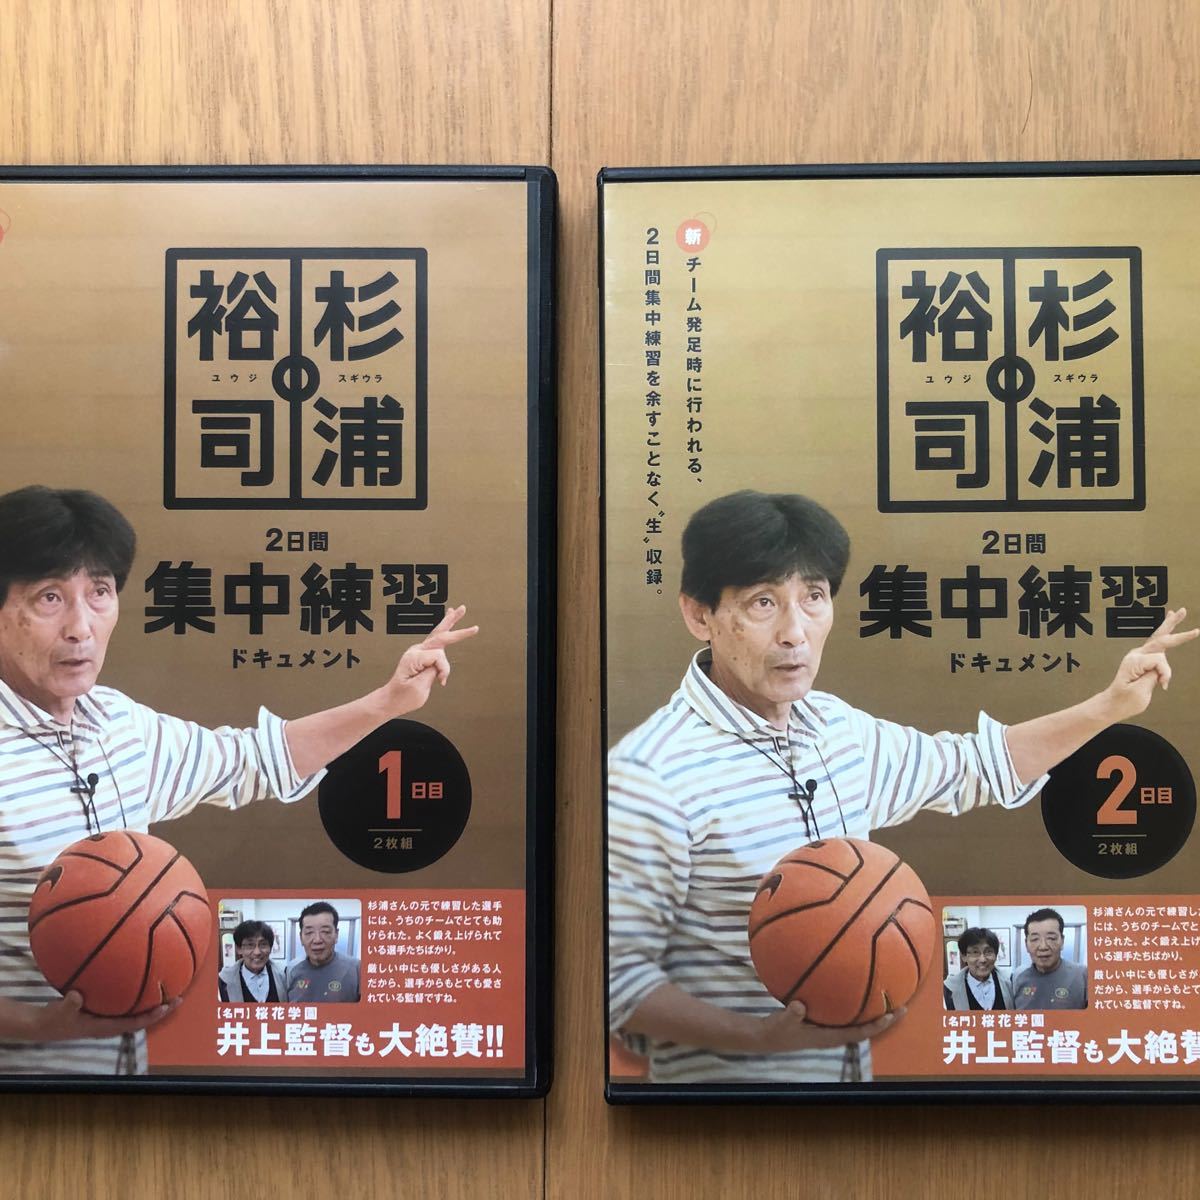 バスケットボール バスケ 指導 小中 DVD - スポーツ・フィットネス